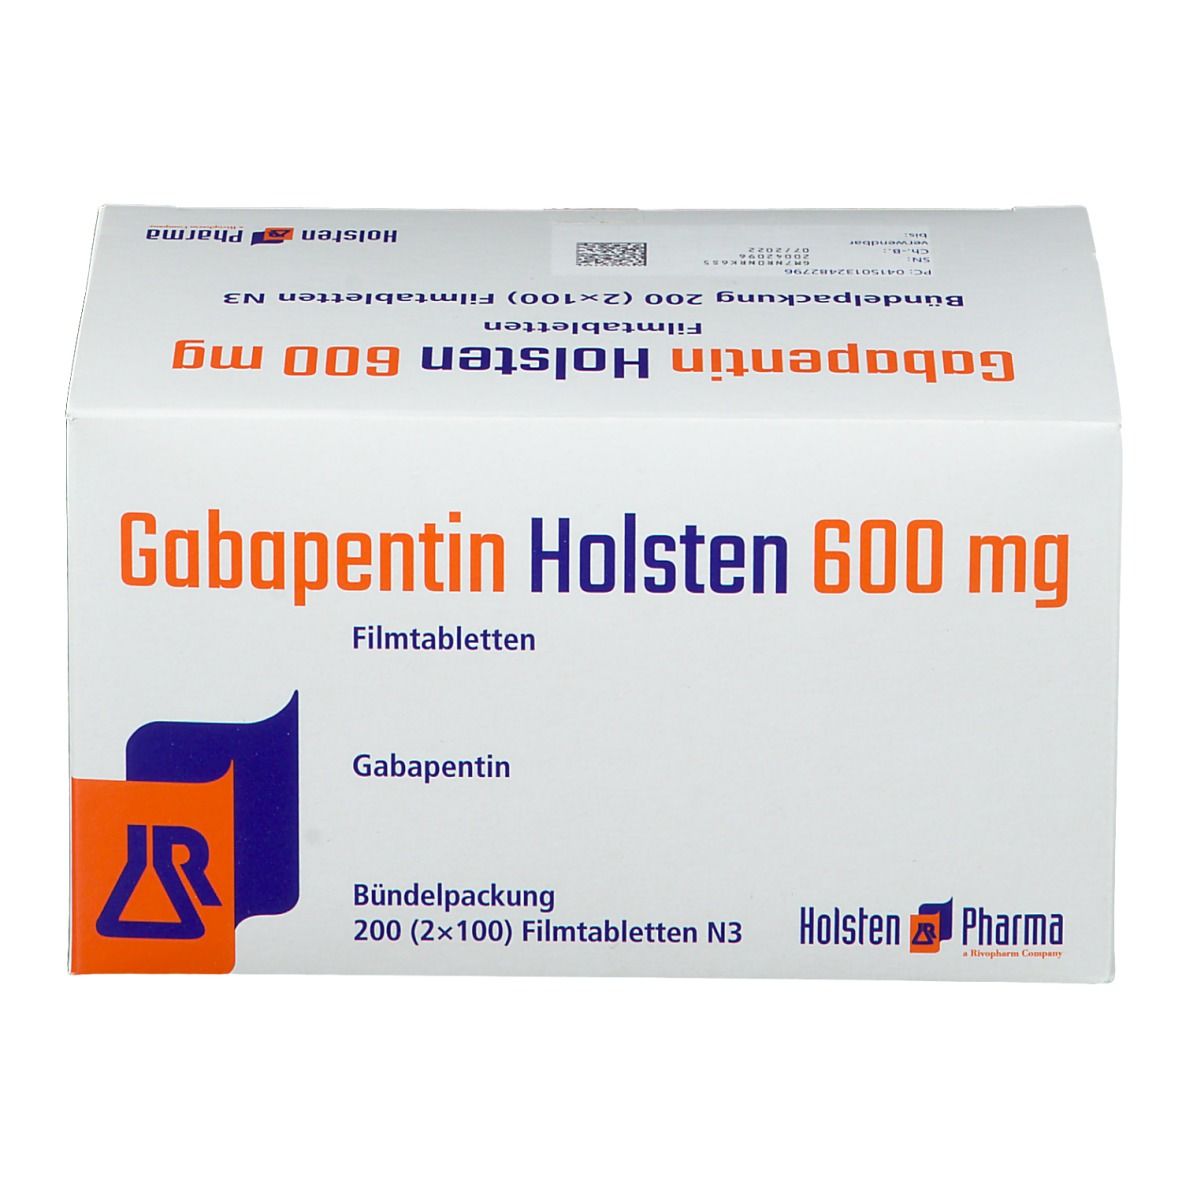 Gabapentin Holsten 600 mg